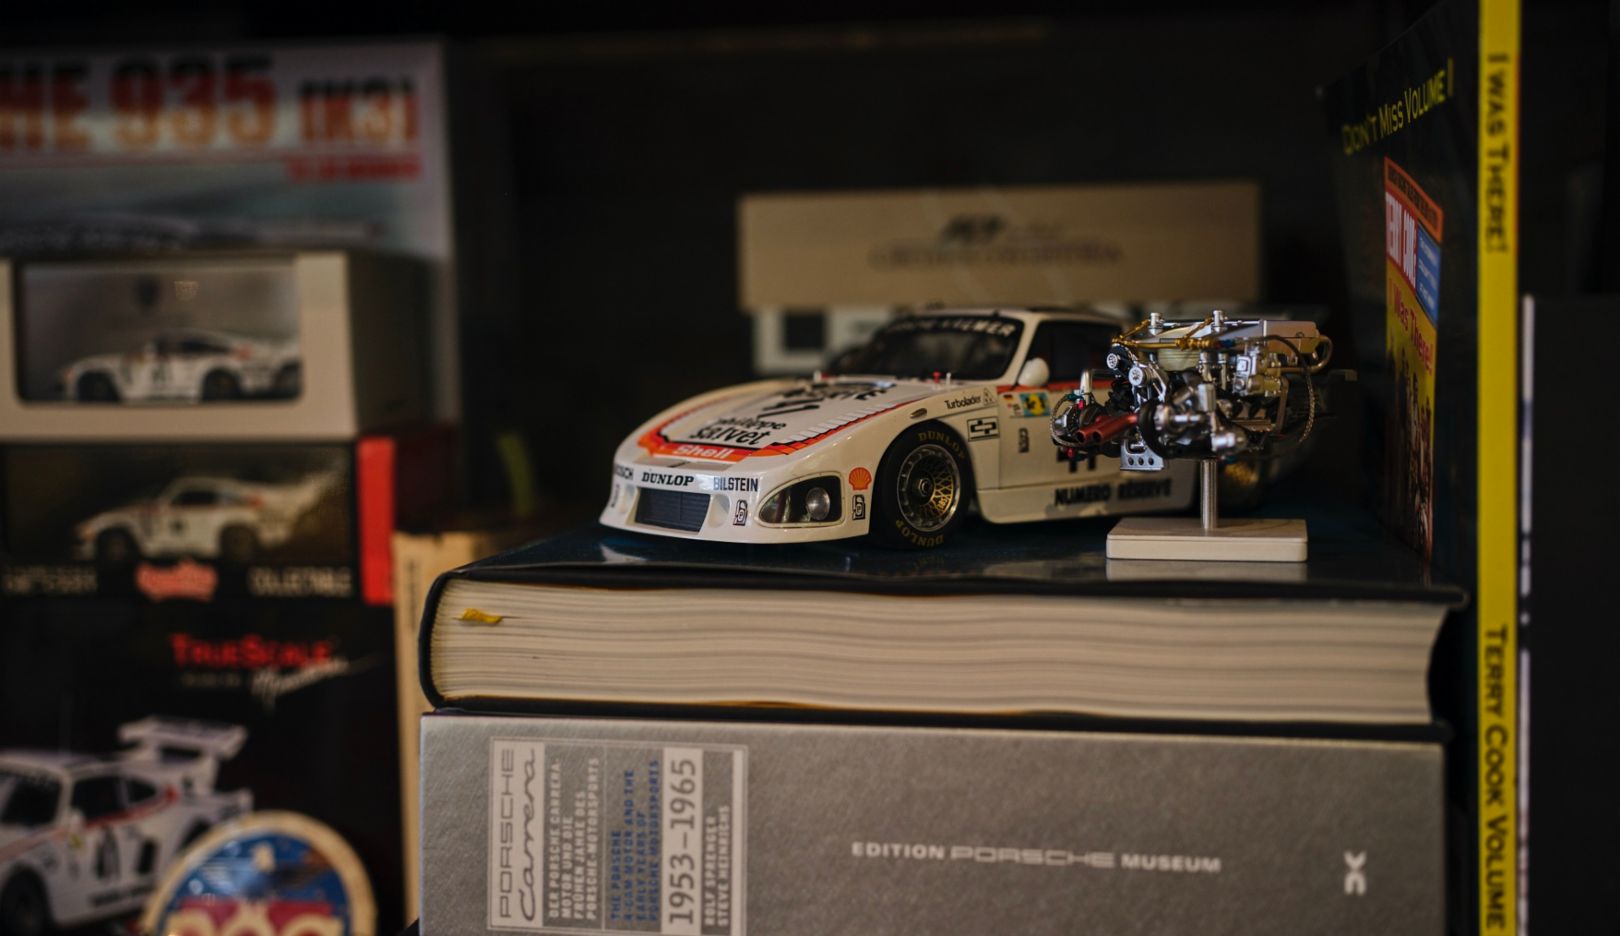 Zahlreiche Porsche-Devotionalien stehen bei Meyer im Regal. Auch ein Miniatur-Modell des Siegerfahrzeugs.